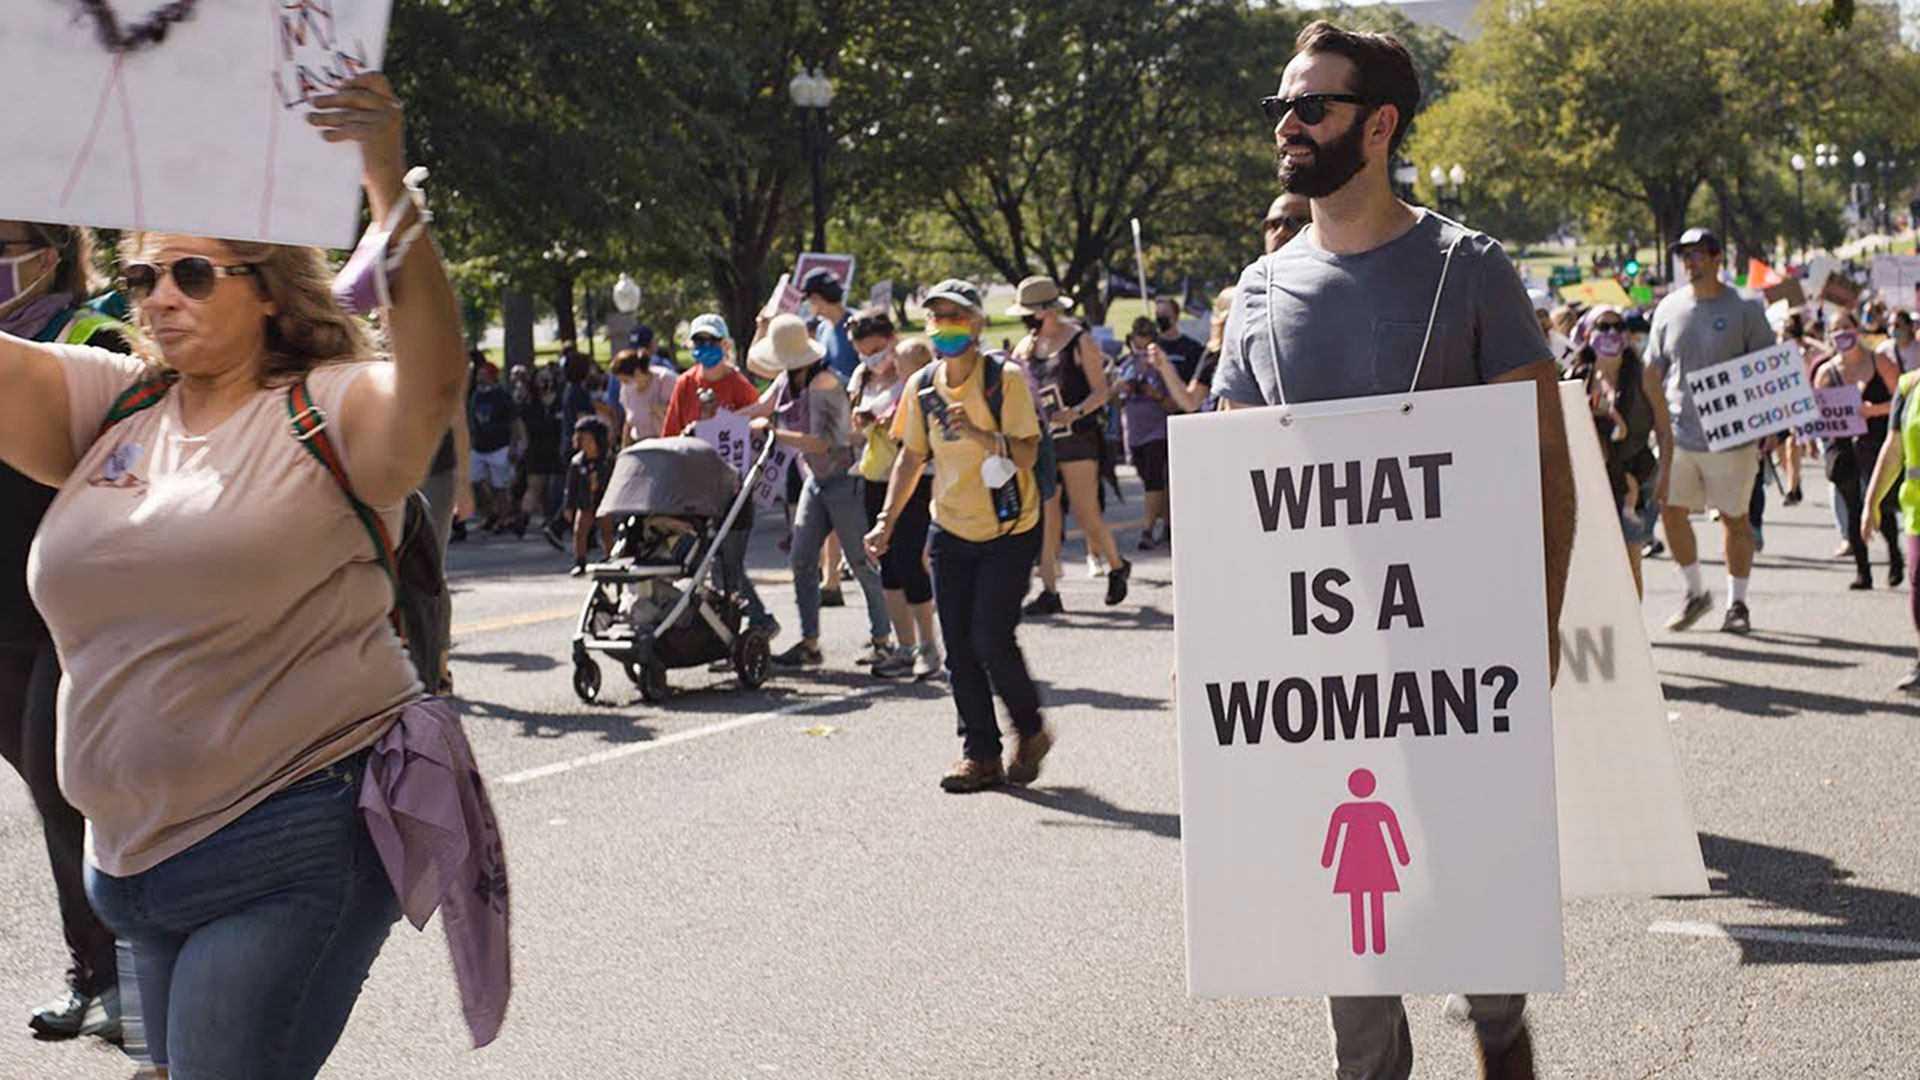 Matt Walsh, en una marcha de mujeres, con su pregunta en un cartel. Escena del documental "What is a woman?"